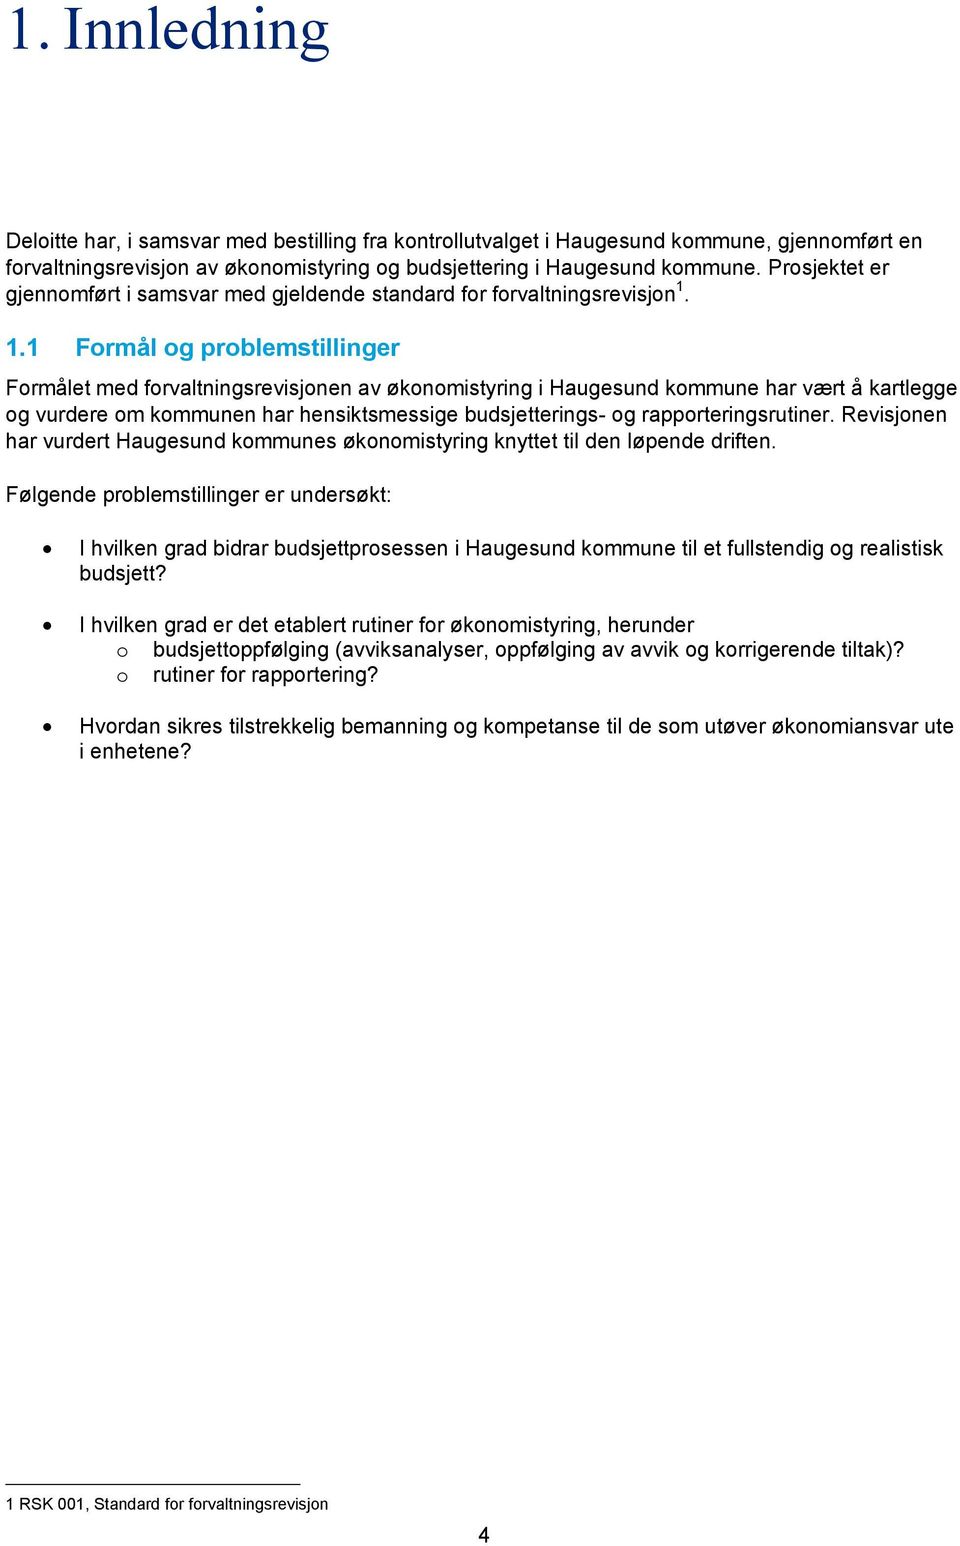 1.1 Formål og problemstillinger Formålet med forvaltningsrevisjonen av økonomistyring i Haugesund kommune har vært å kartlegge og vurdere om kommunen har hensiktsmessige budsjetterings- og